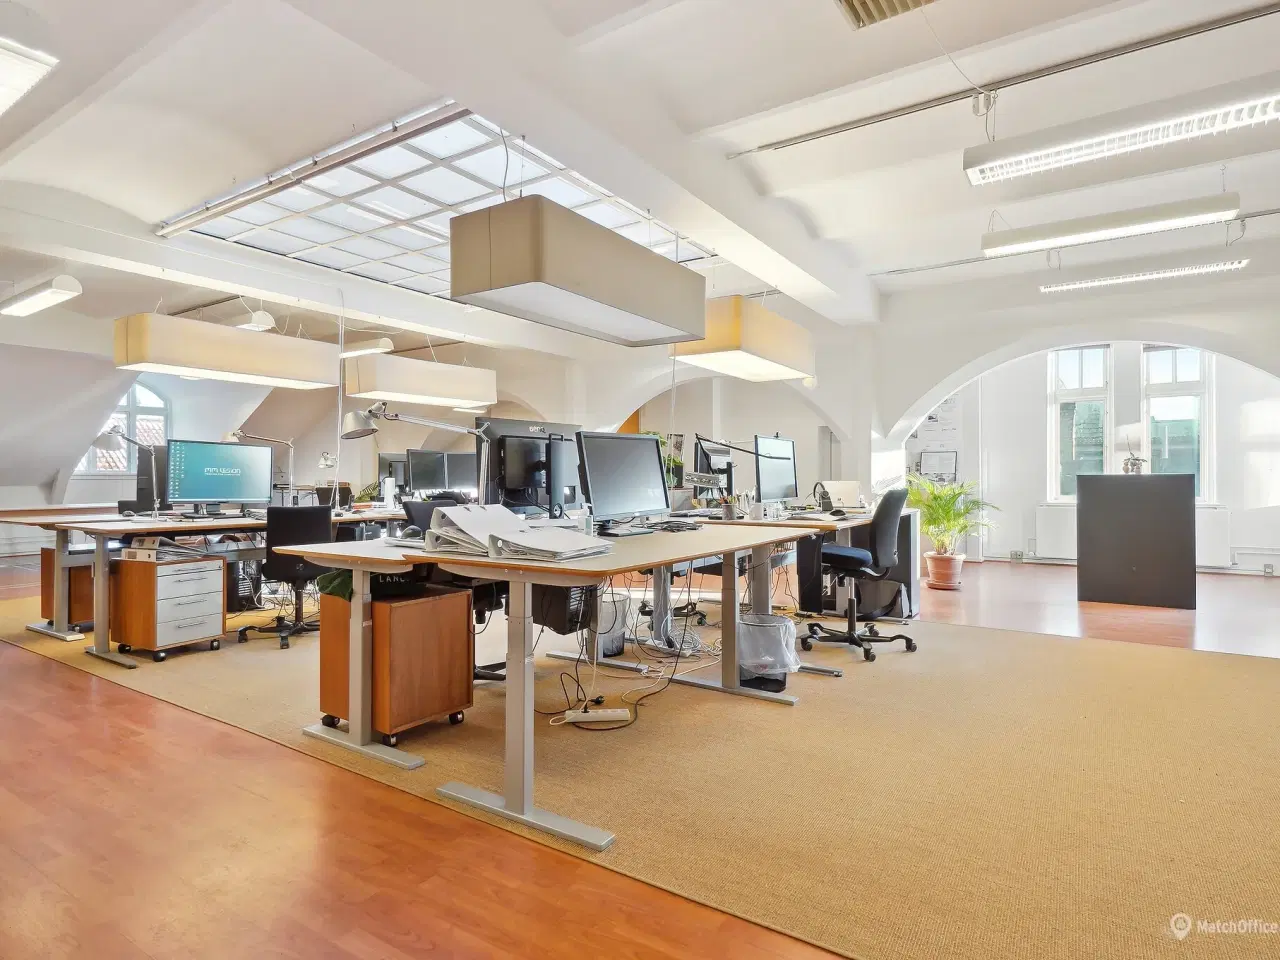 Billede 5 - 339 m² storrumskontor med flere kontorer og mødelokaler udlejes i Kongensgade i Odense City